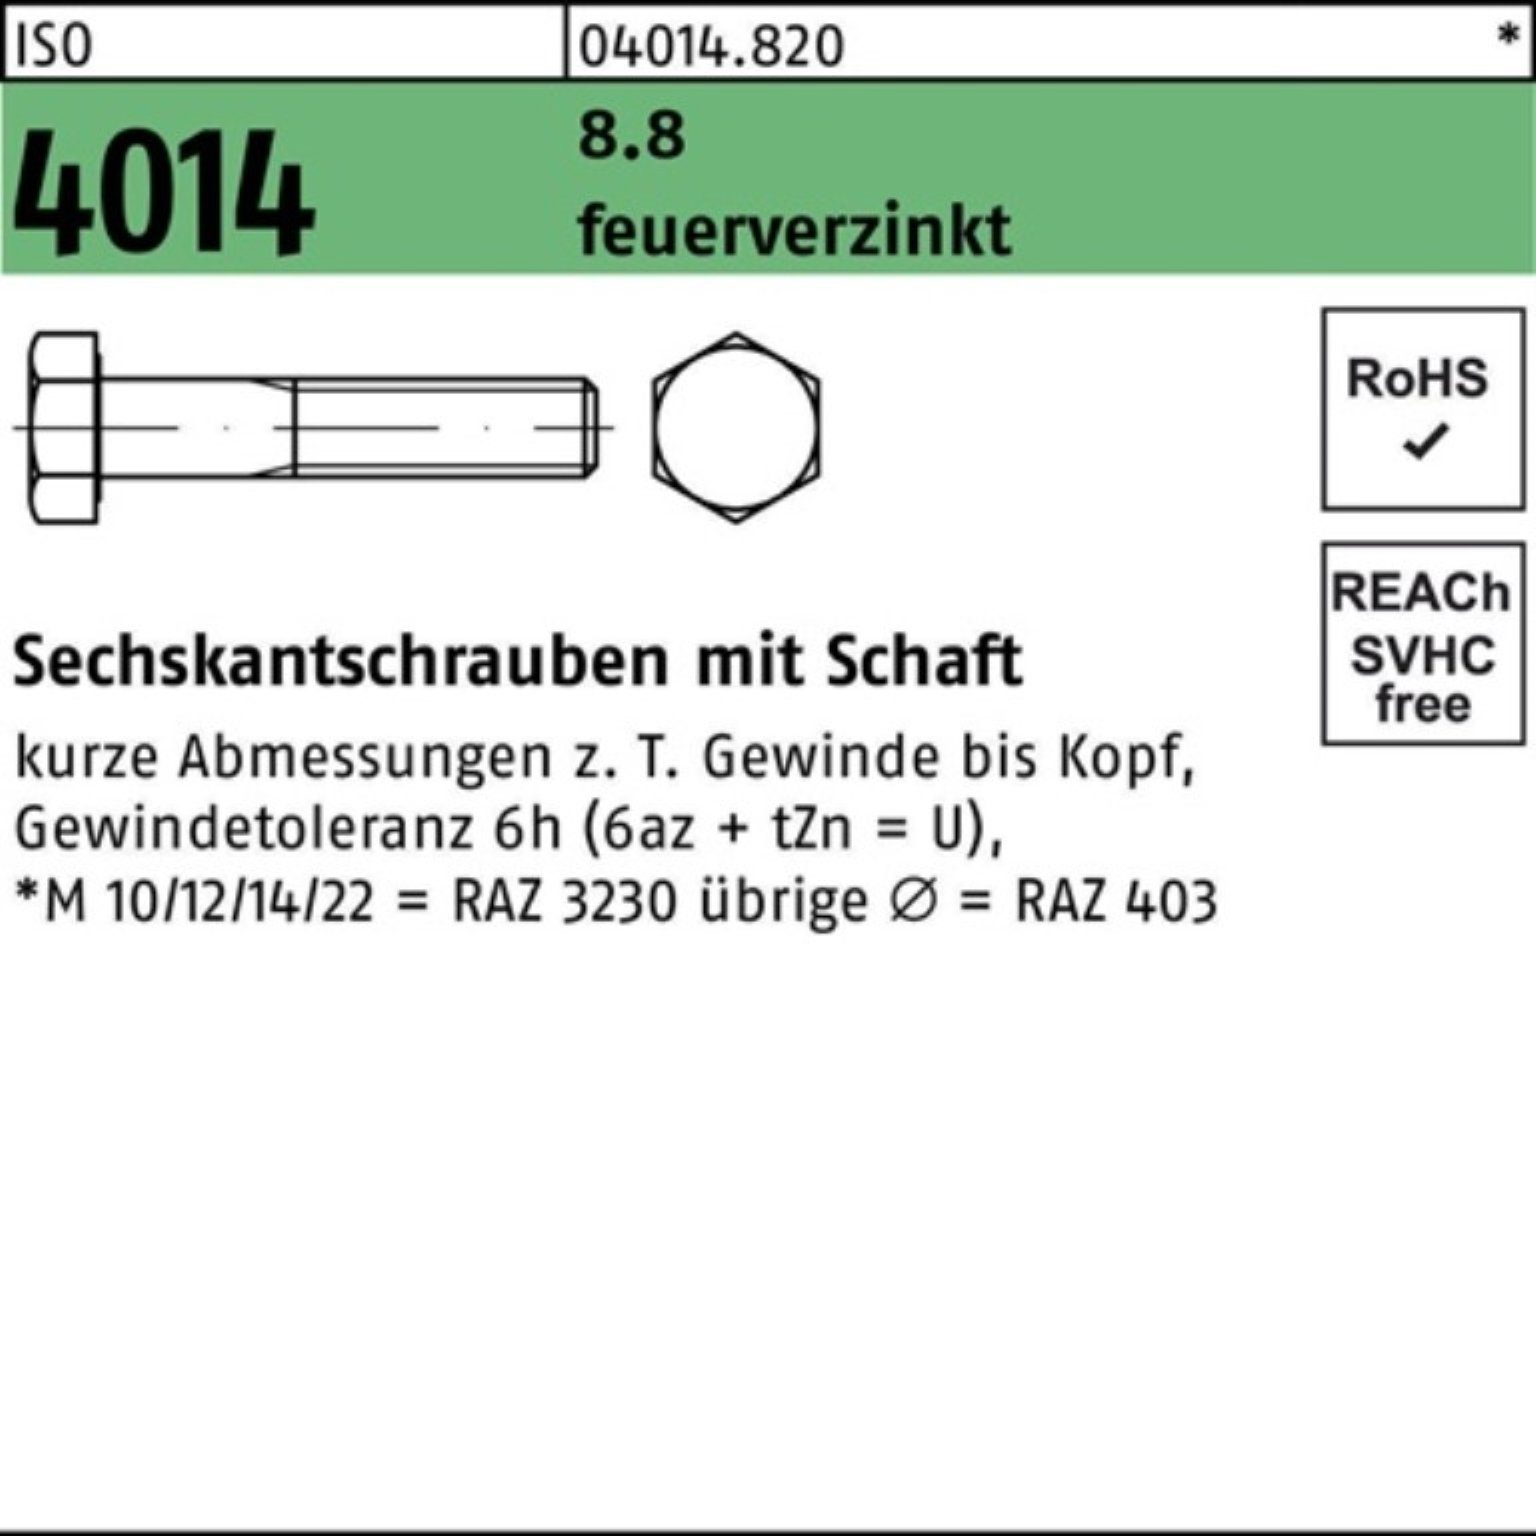 Bufab Sechskantschraube 200er Pack Sechskantschraube ISO 4014 Schaft M8x 100 8.8 feuerverz. 20